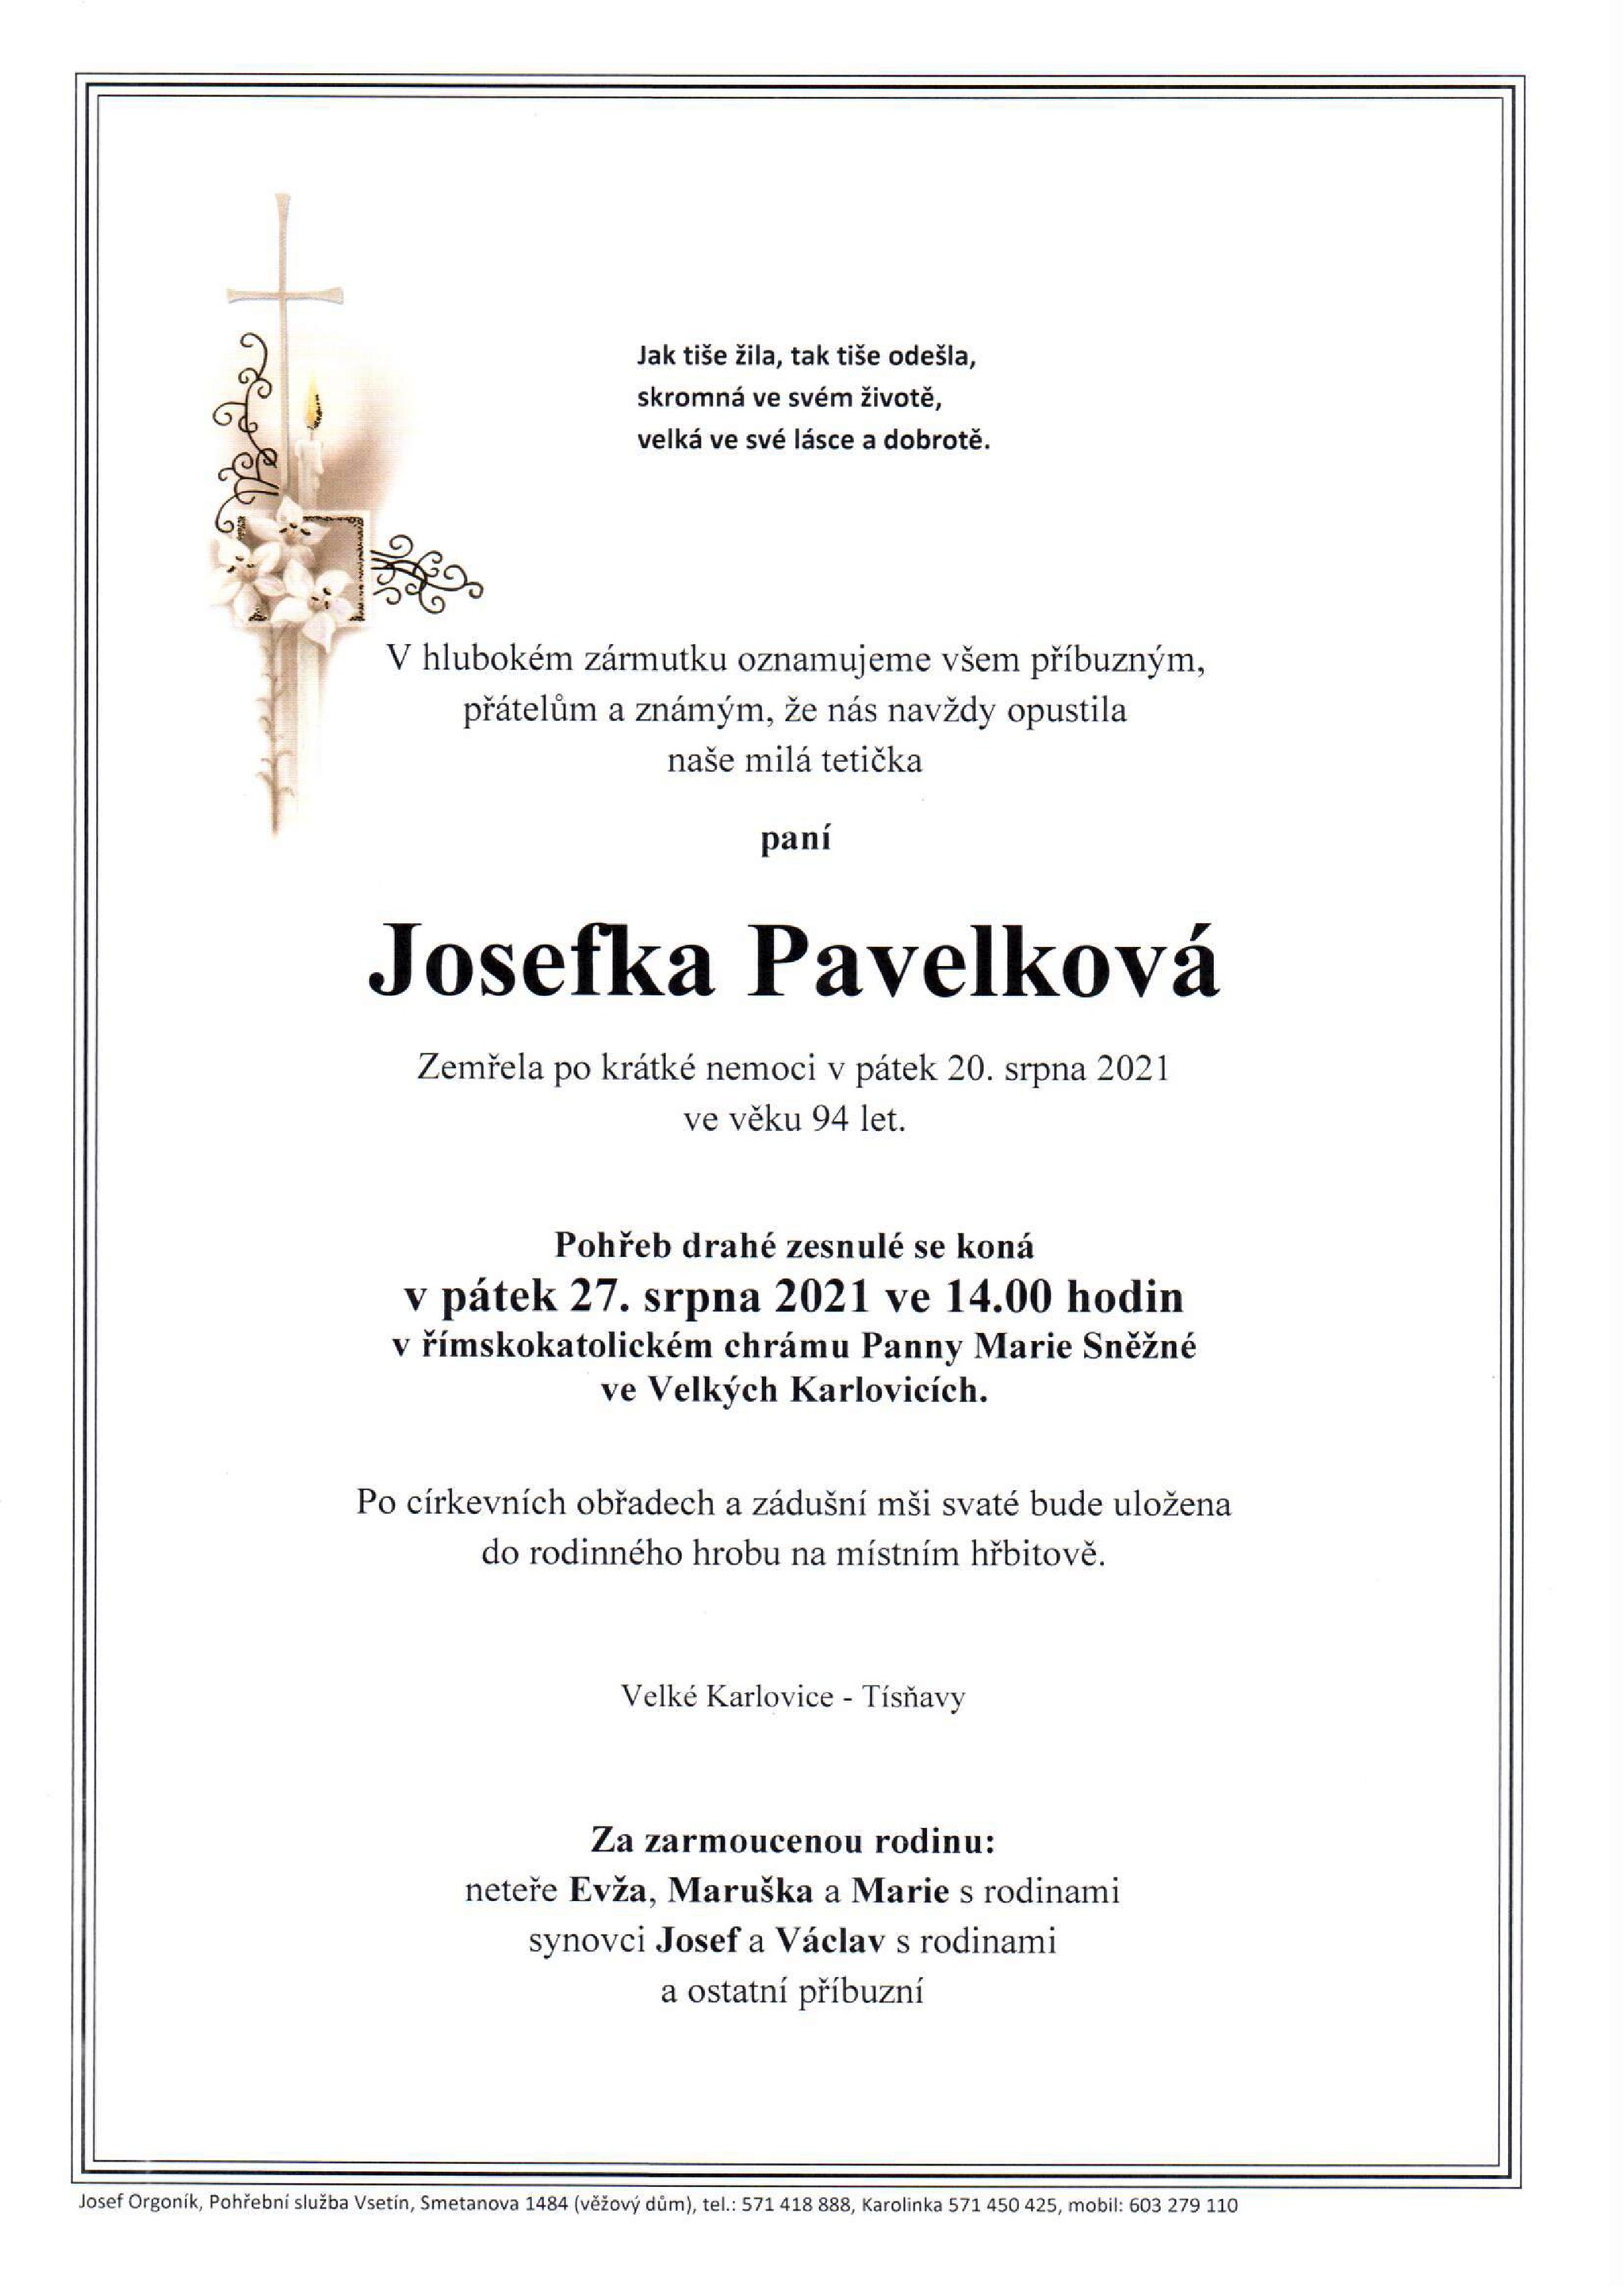 Josefka Pavelková